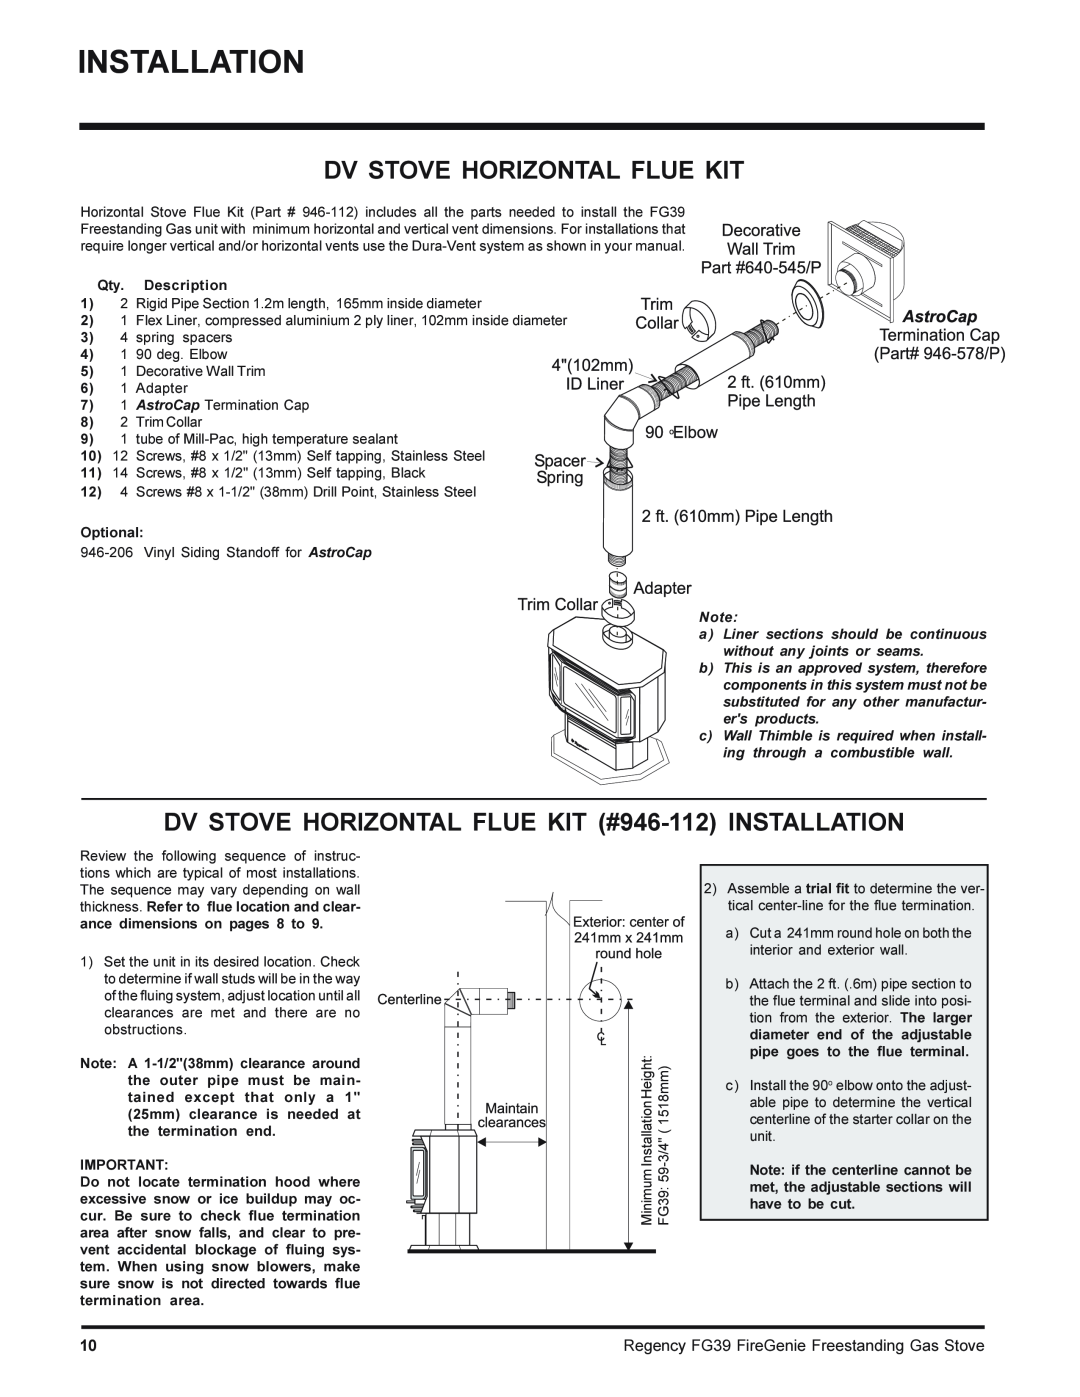 Regency FG39-LPG Dv Stove Horizontal Flue Kit, DV STOVE HORIZONTAL FLUE KIT #946-112INSTALLATION, Qty. Description 